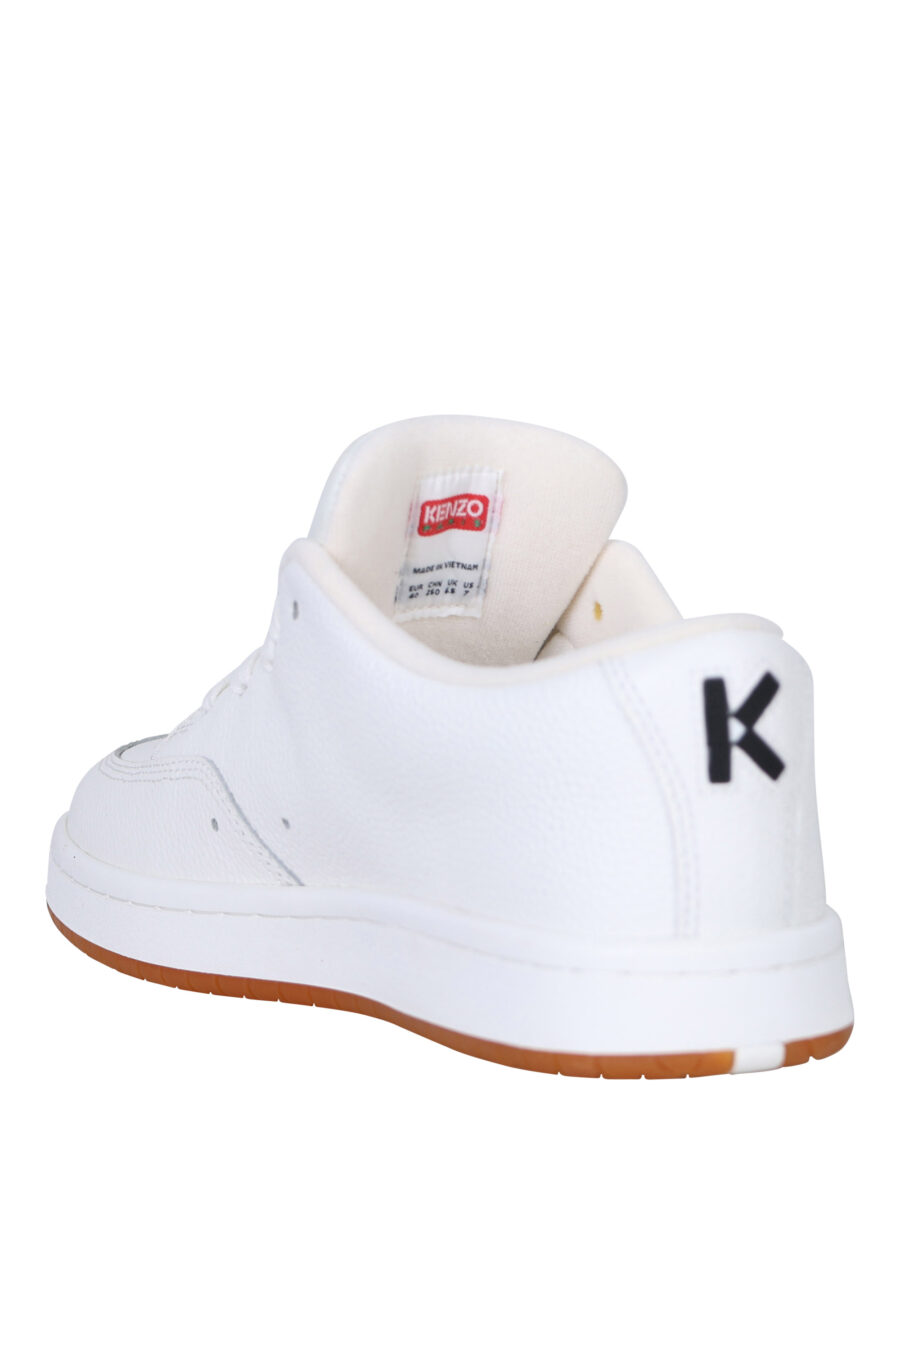 Zapatillas blancas "kenzo dome" con minilogo y suela marrón - 3612230556089 3